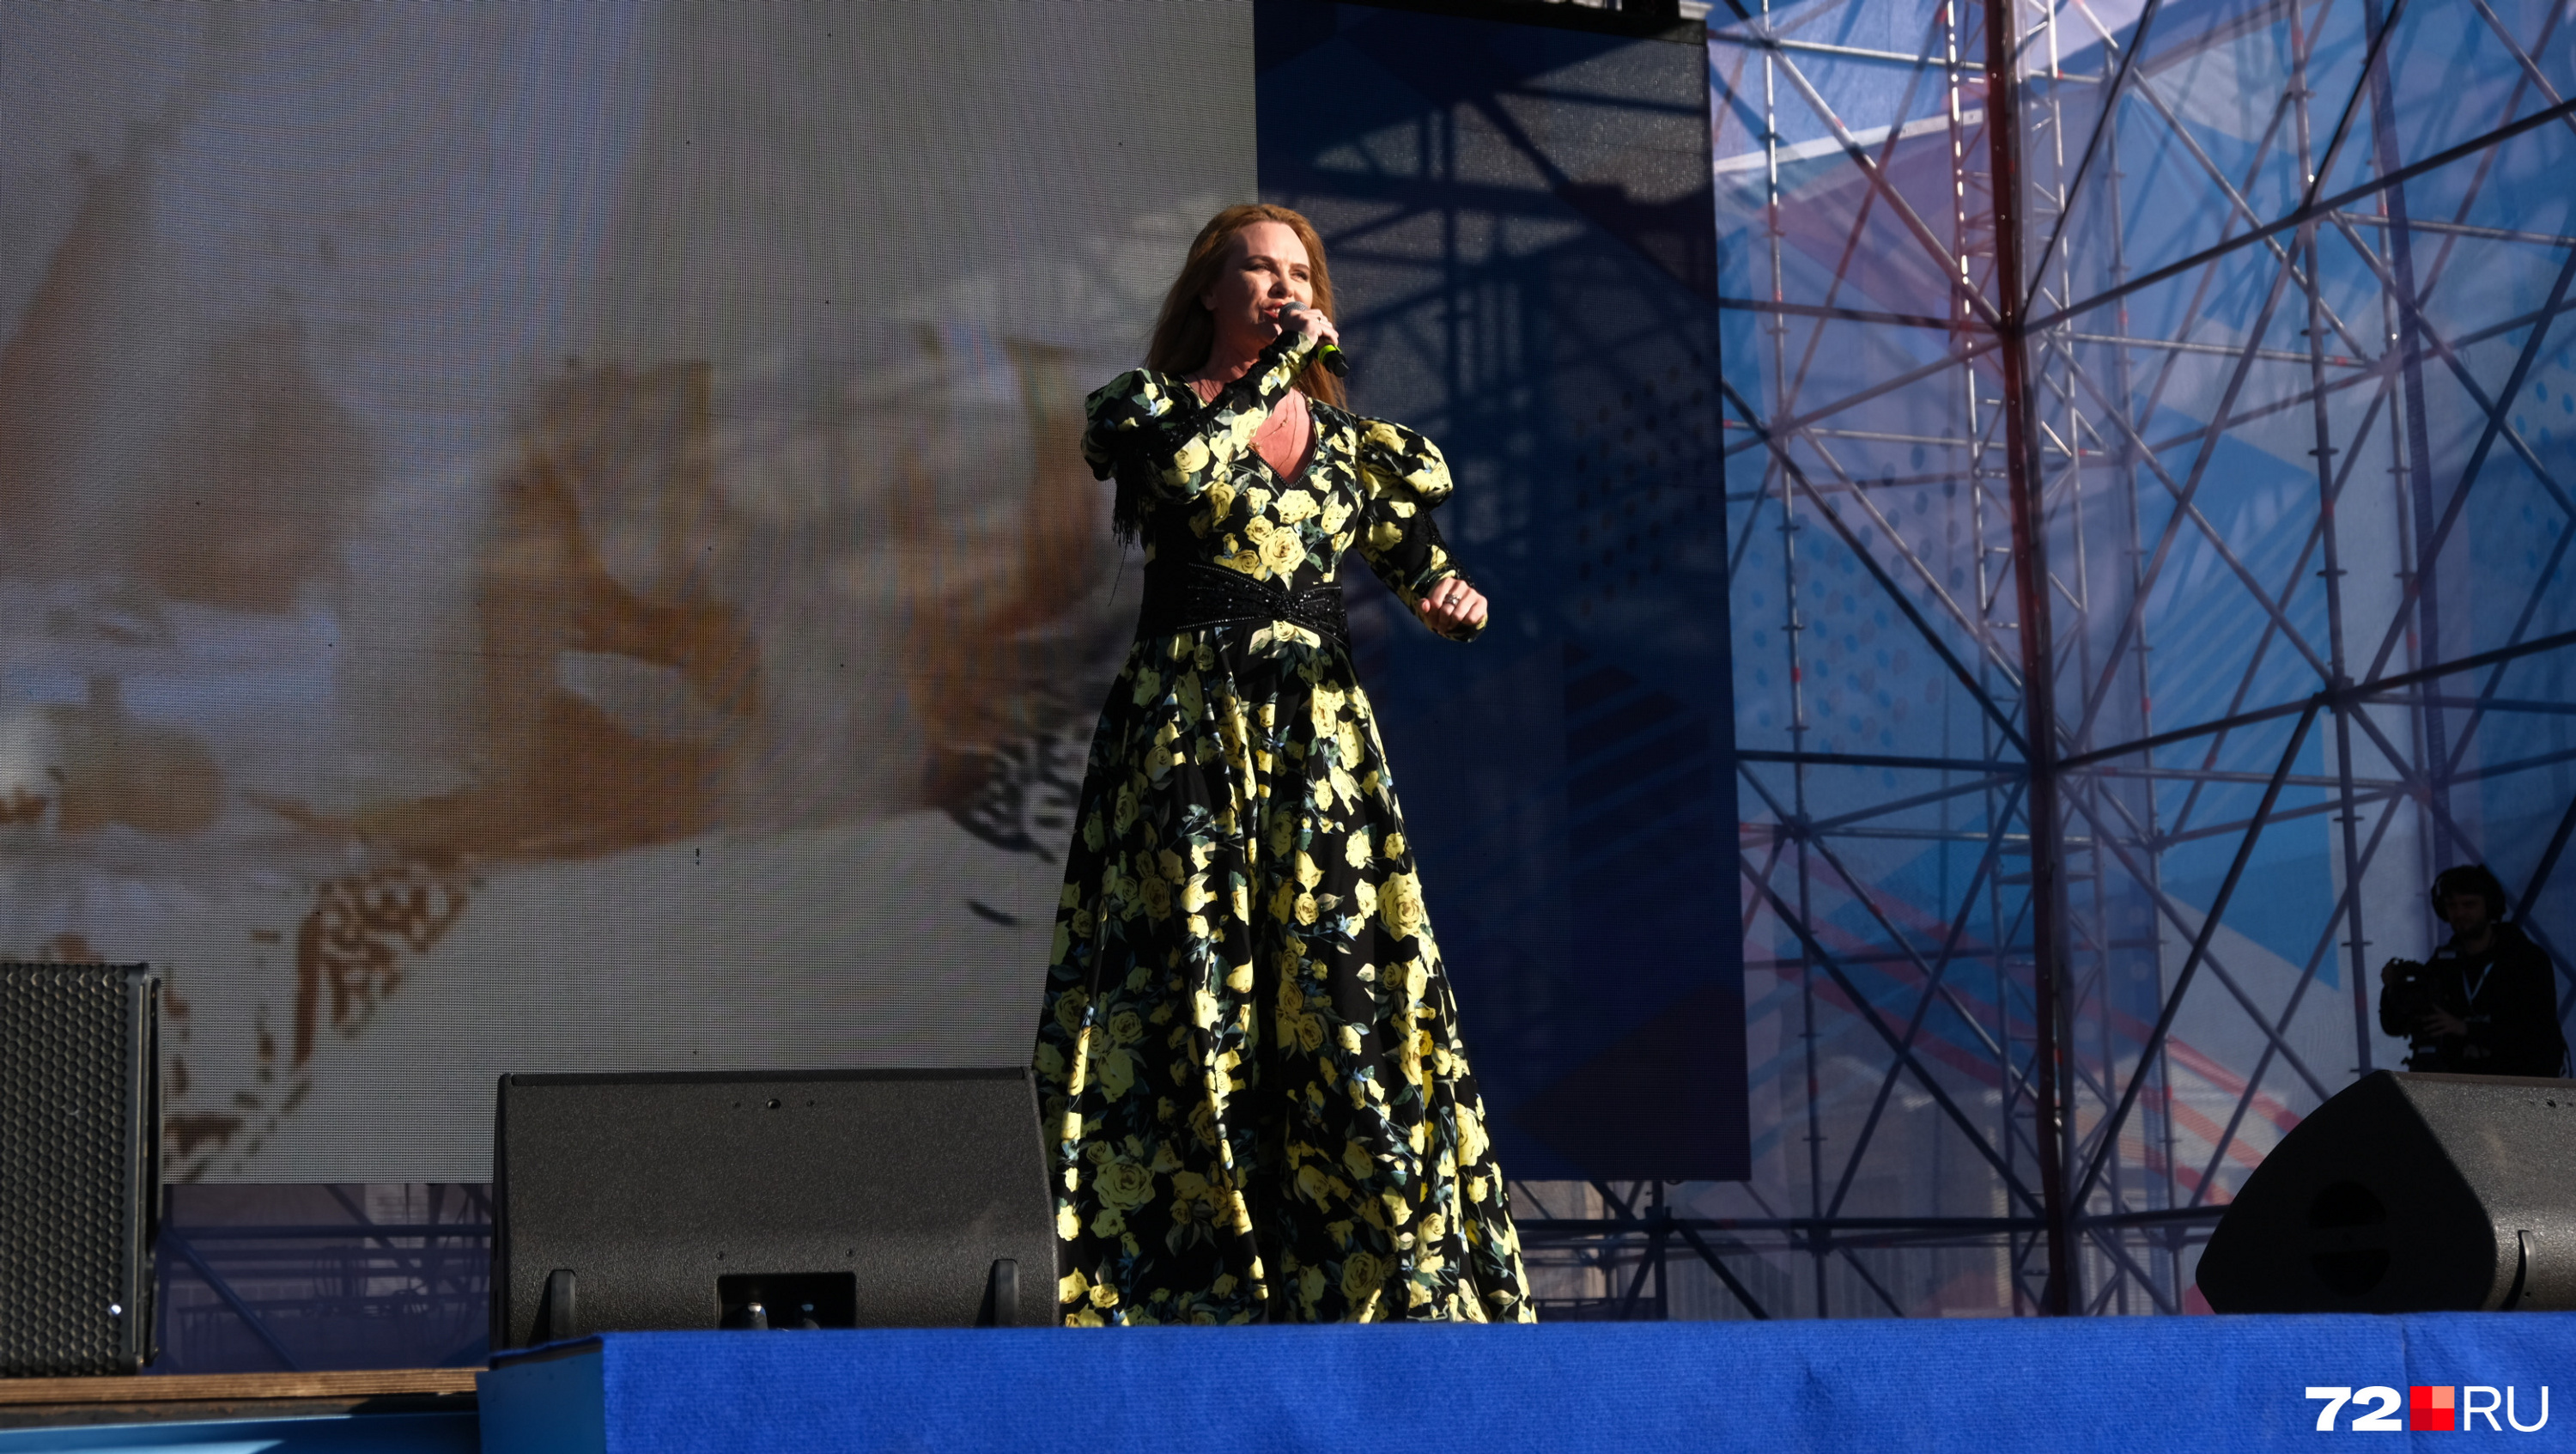 Варвара исполнила четыре песни, среди которых были «Грезы» и «Летала»